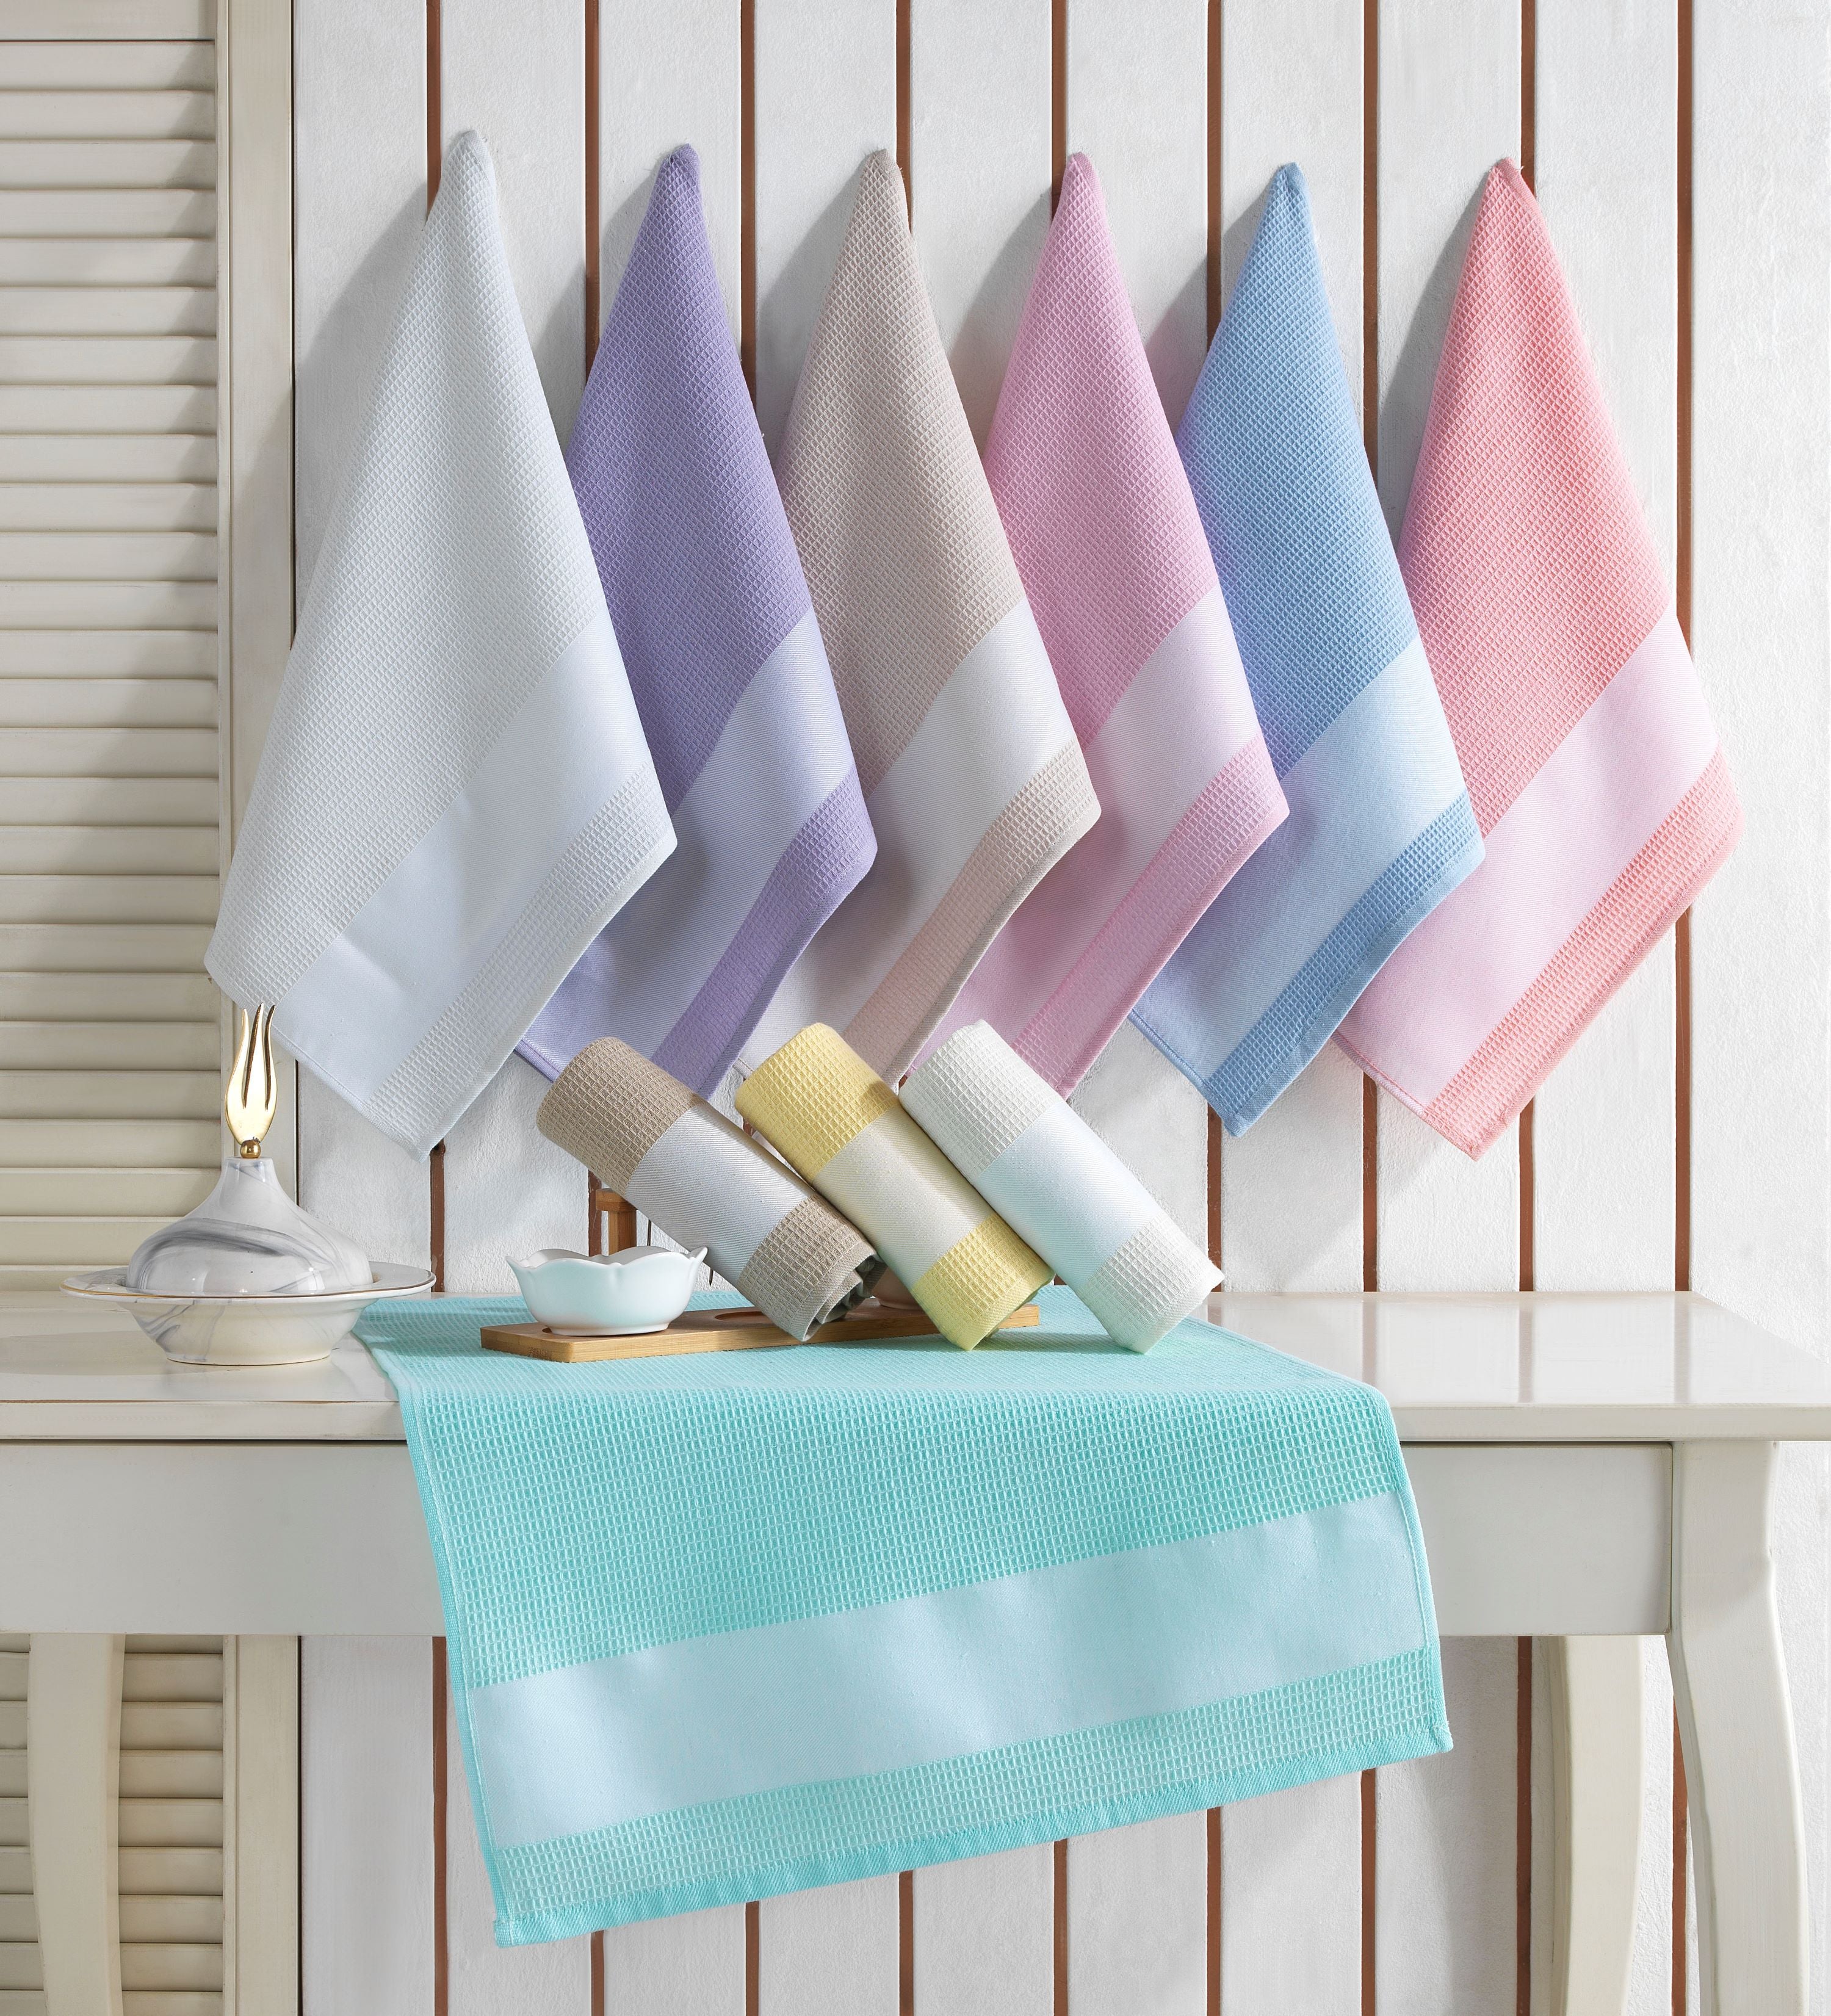 Jacquard Floral Kitchen Towels, Dish Cotton Towel - Set of 10